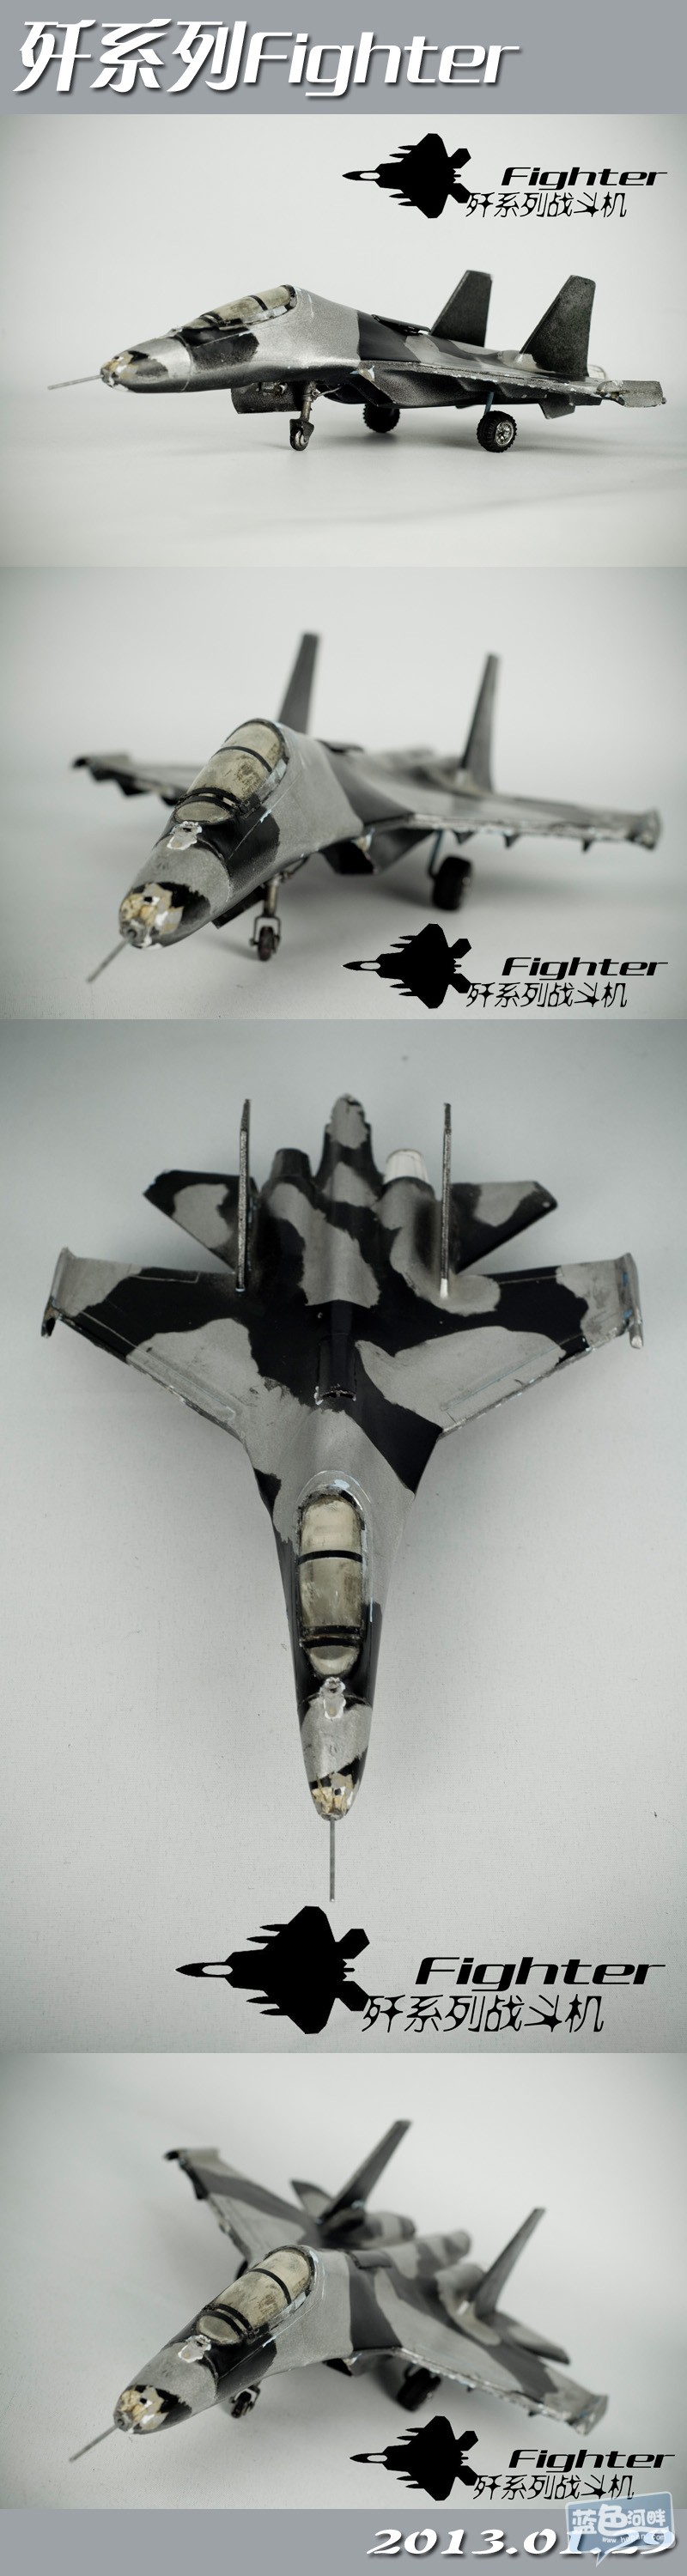 歼系列Fighter.jpg